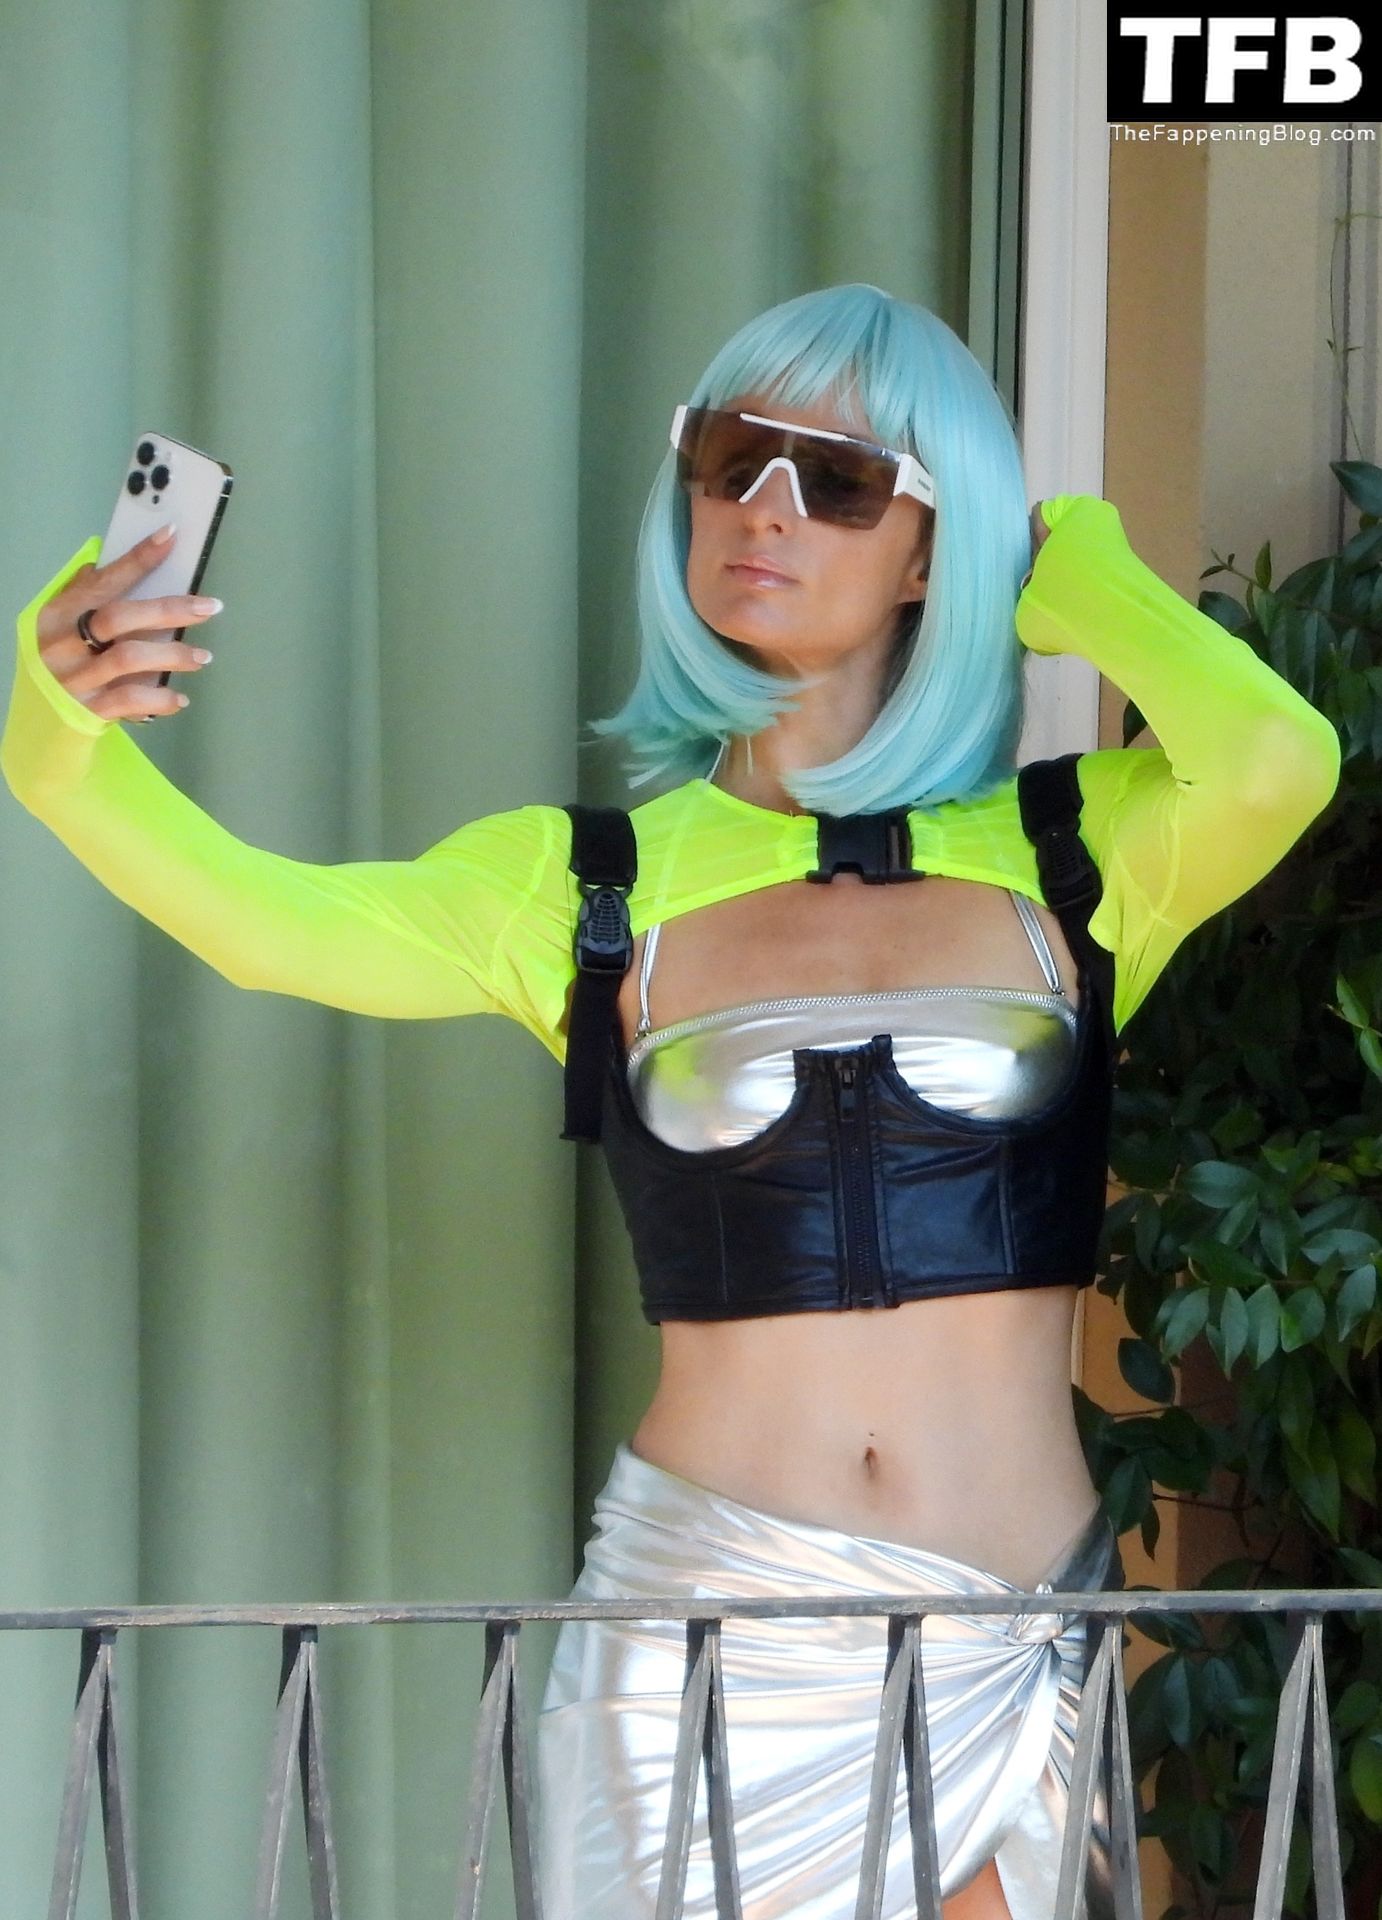 Paris Hilton Poses in a Silver Bikini on Hotel Room’s Balcony in Portofino (34 Photos)